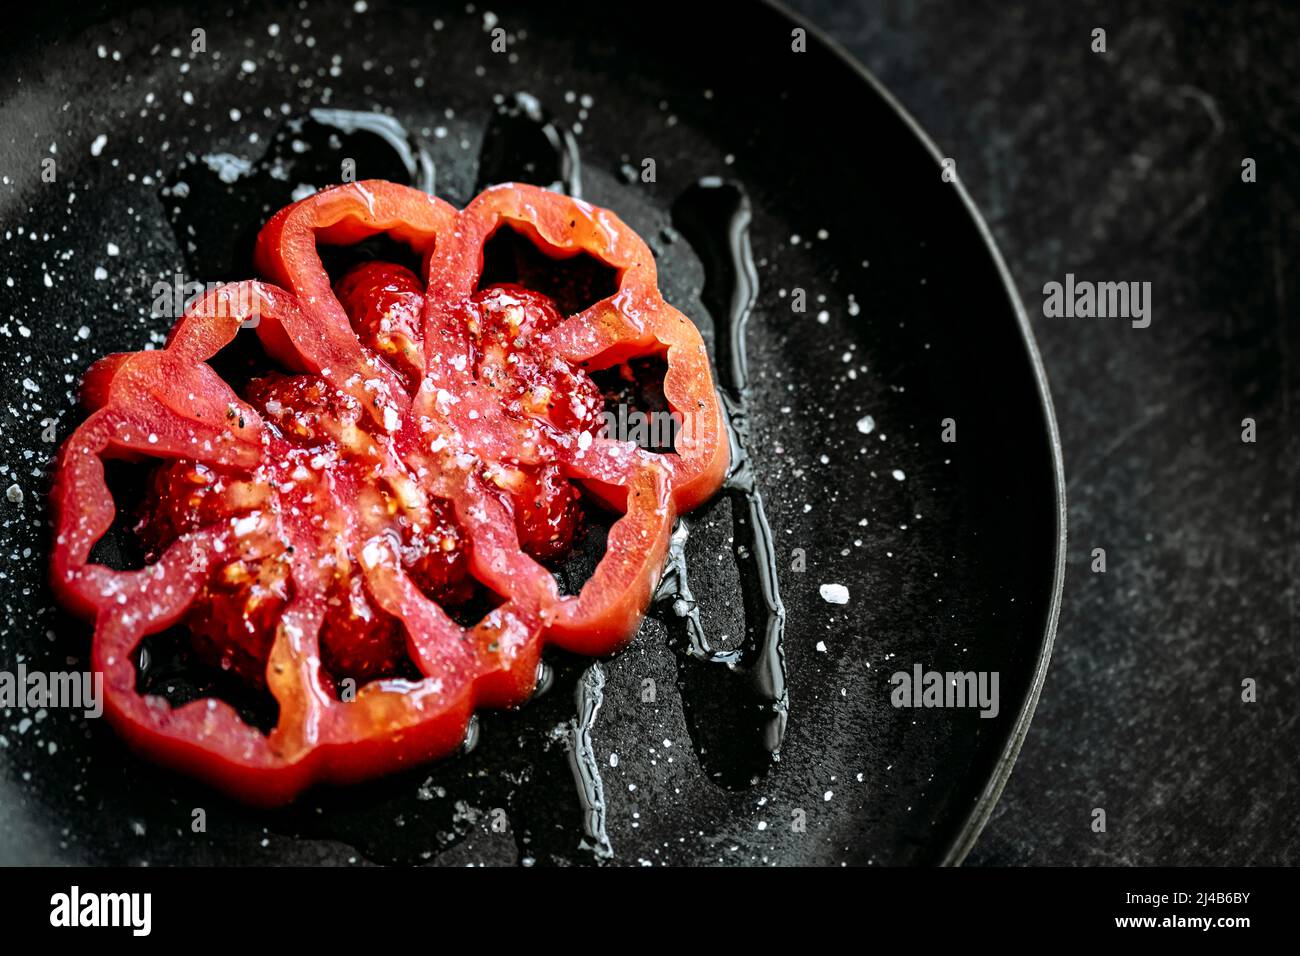 tranche de tomate coeur de boeuf, placée sur une assiette noire, sel, poivre et huile d'olive, sur fond noir texturé. vue d'en haut Banque D'Images